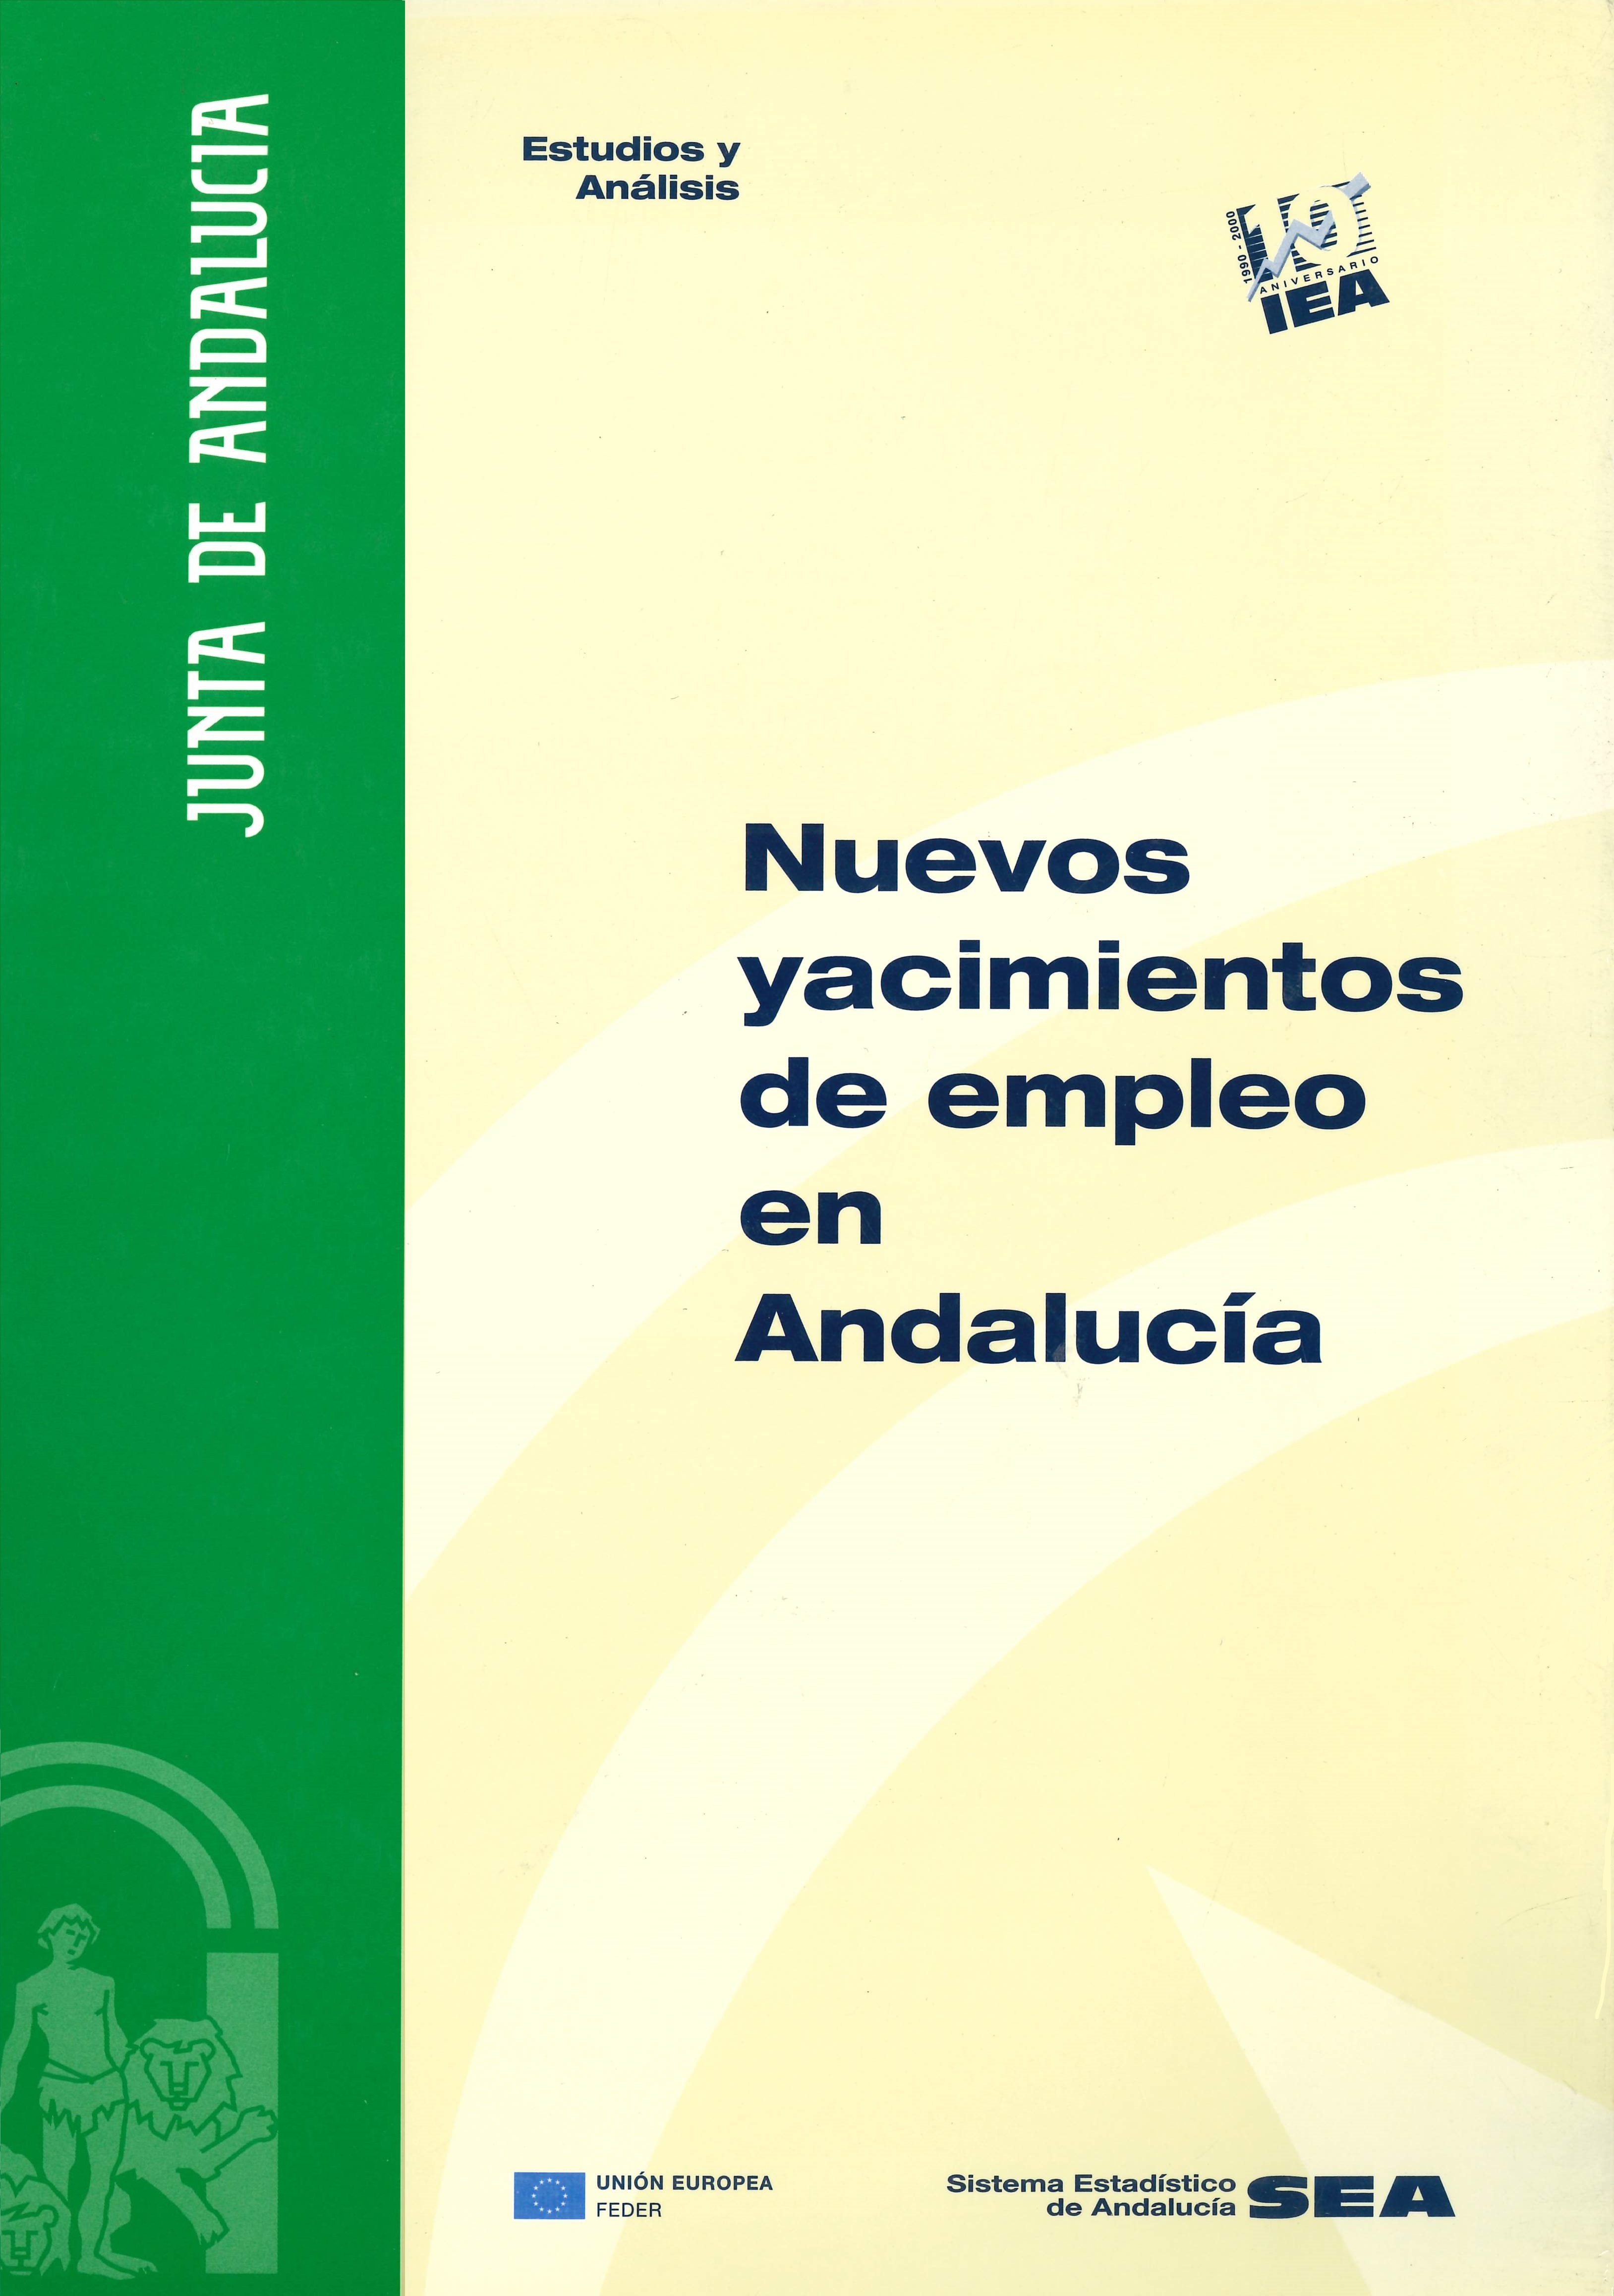 Imagen representativa de la publicación Nuevos yacimientos de empleo en Andalucía